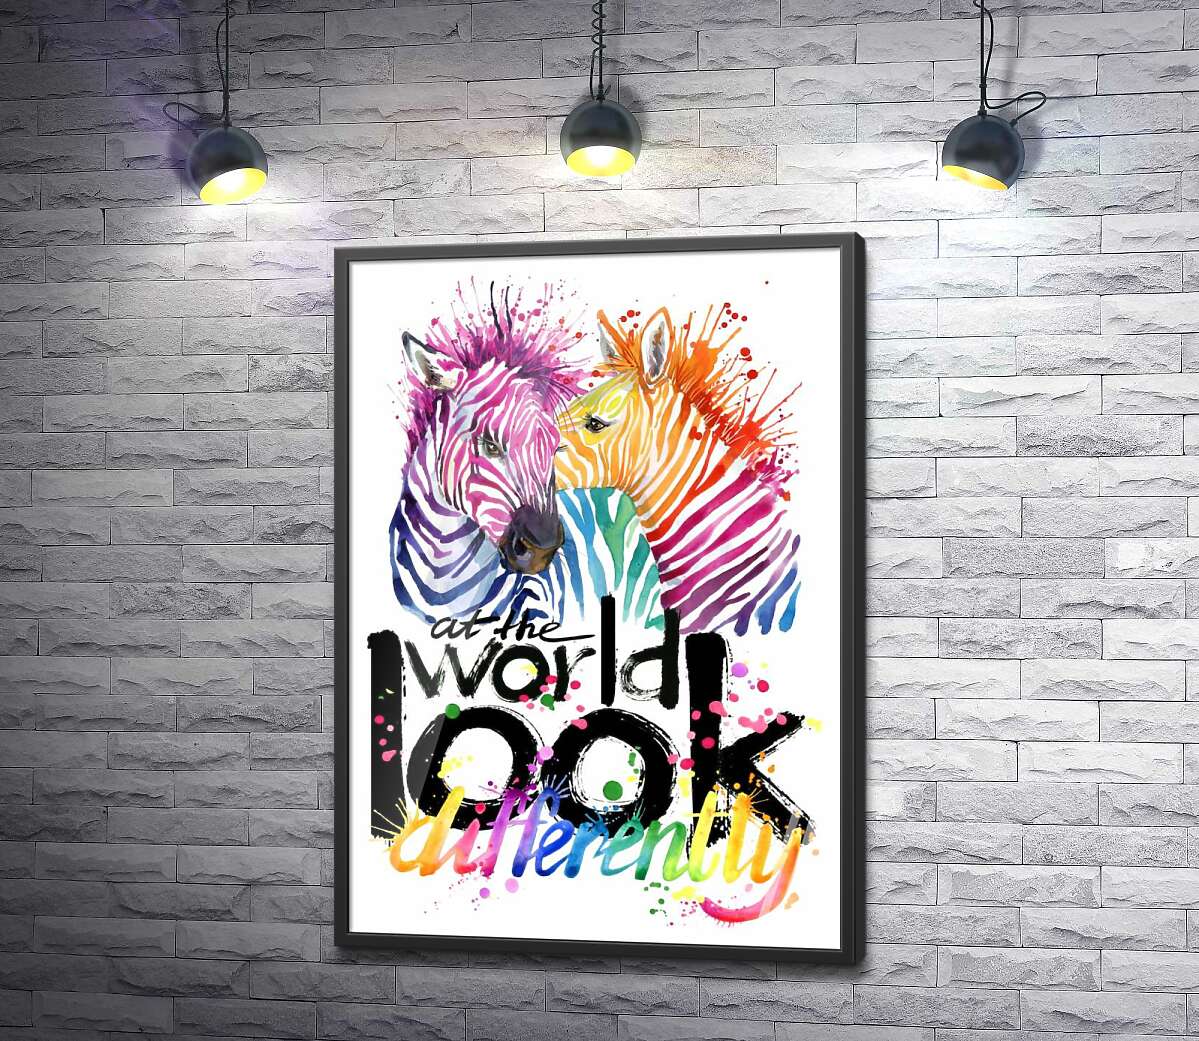 постер Кольорові полоски зебр та напис "look at the world differently"